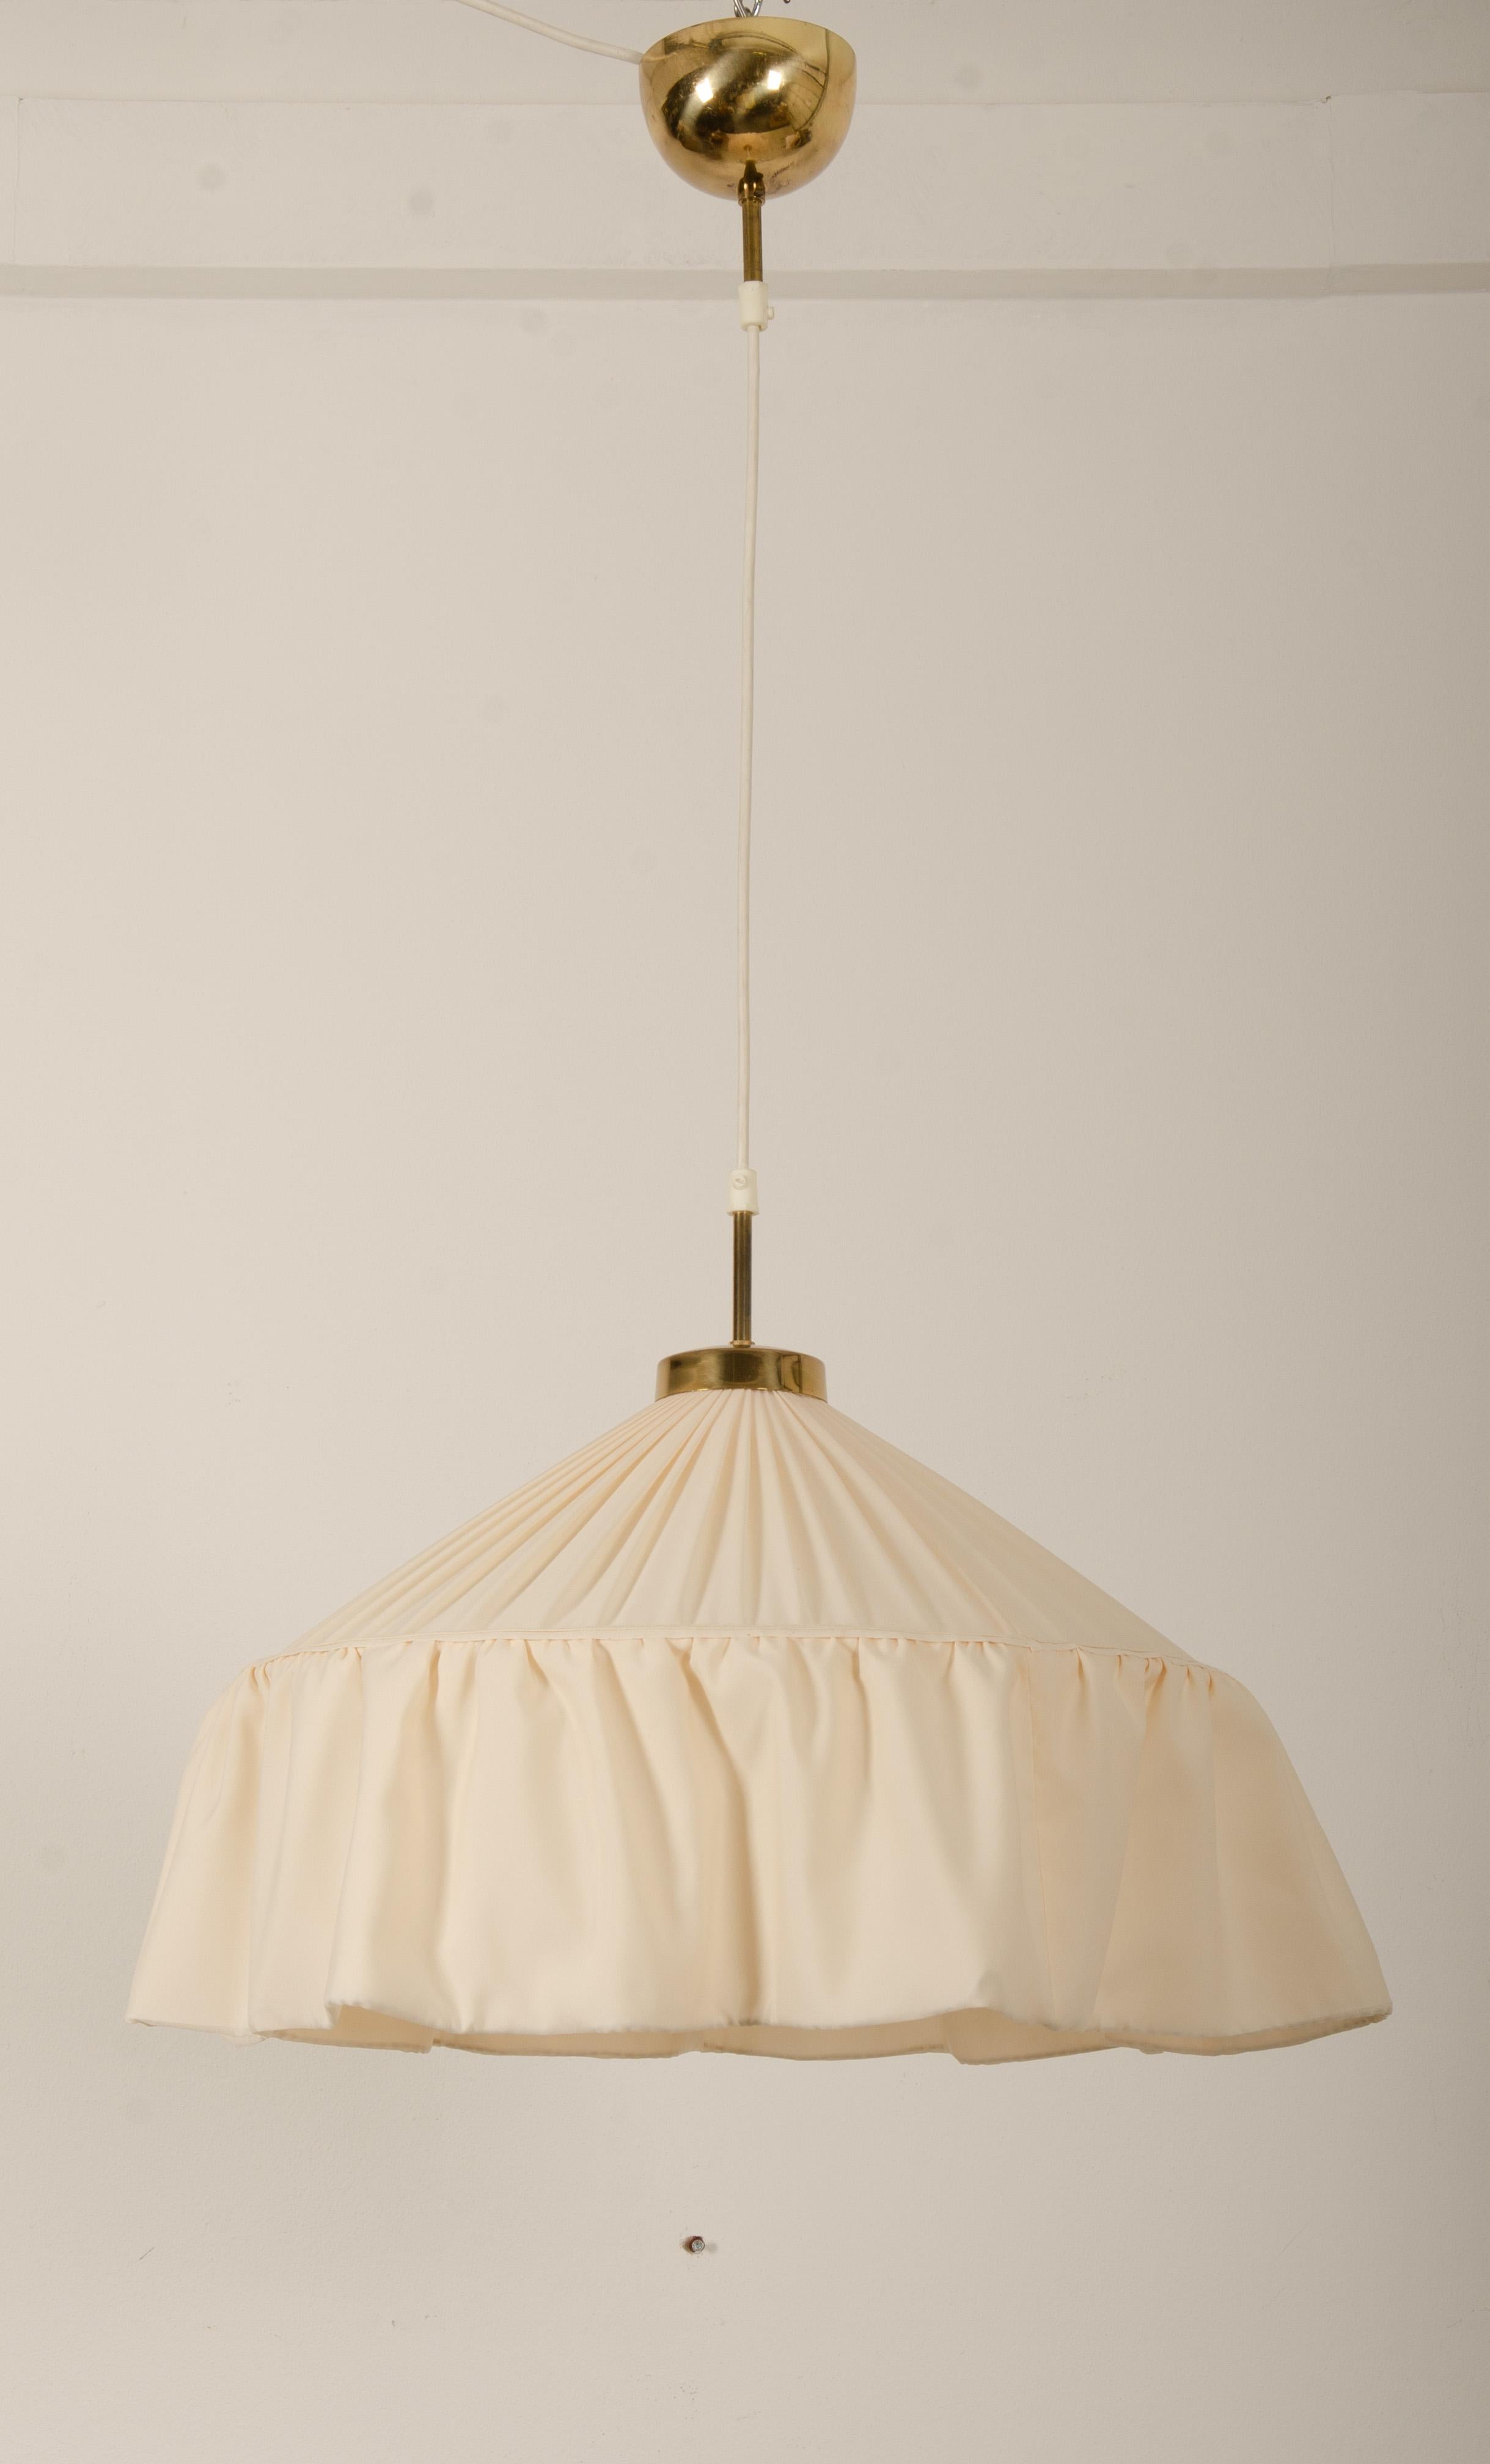 New silk shade, designed by Josef Frank for Firma Svenskt Tenn, Sweden, 1930s-1940s.